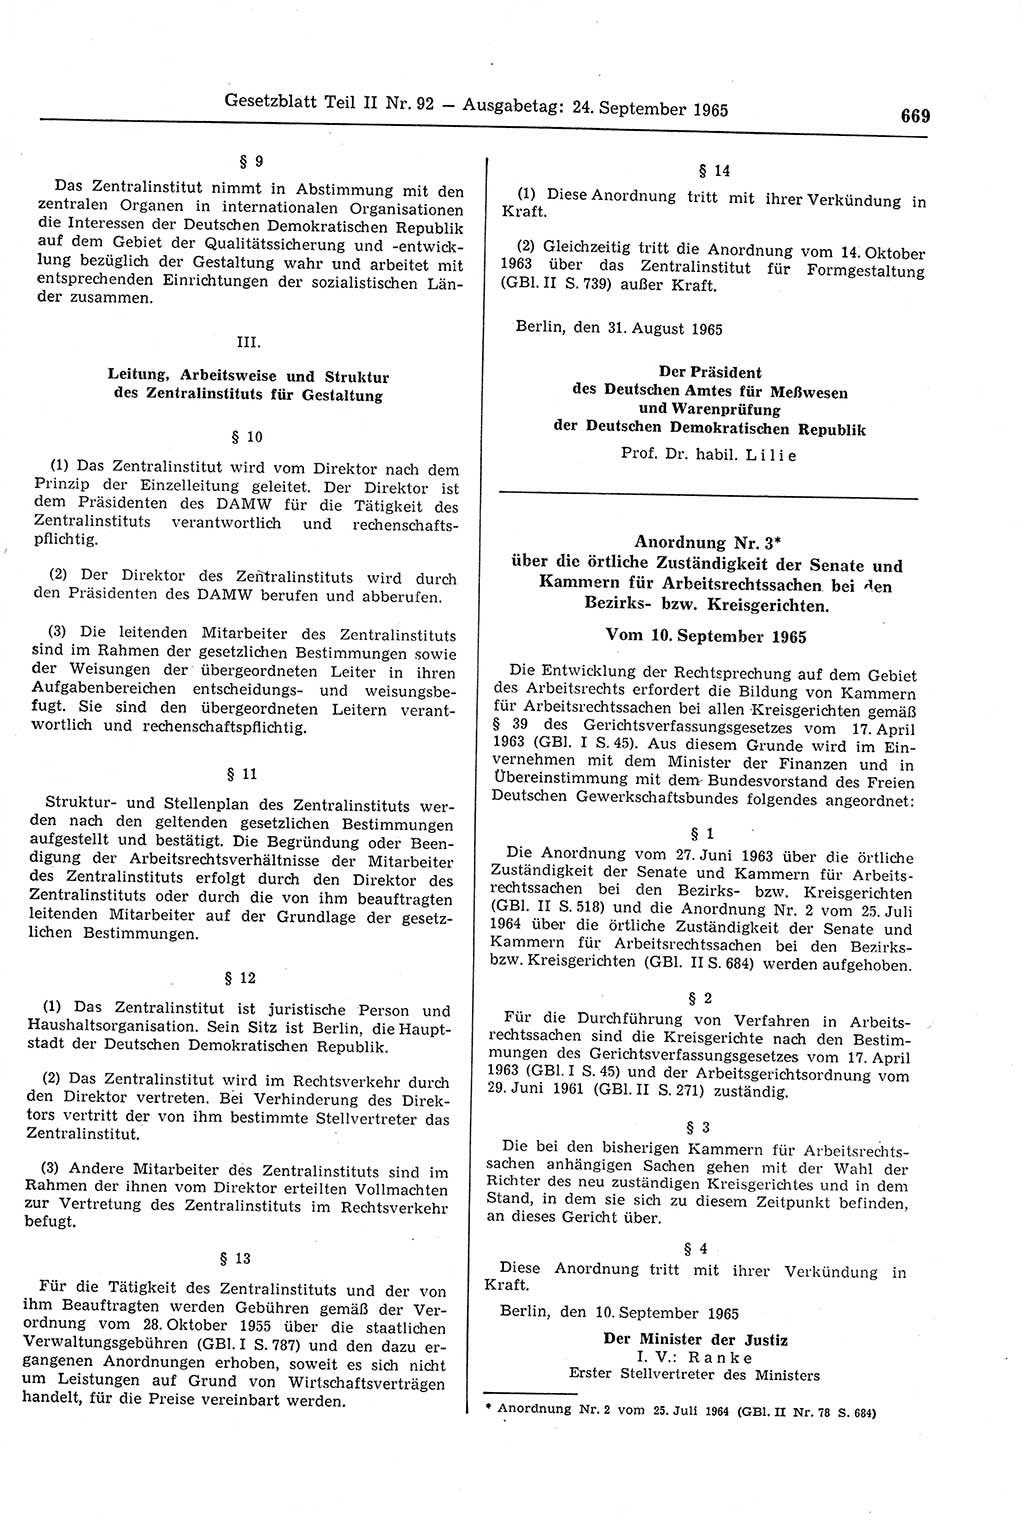 Gesetzblatt (GBl.) der Deutschen Demokratischen Republik (DDR) Teil ⅠⅠ 1965, Seite 669 (GBl. DDR ⅠⅠ 1965, S. 669)